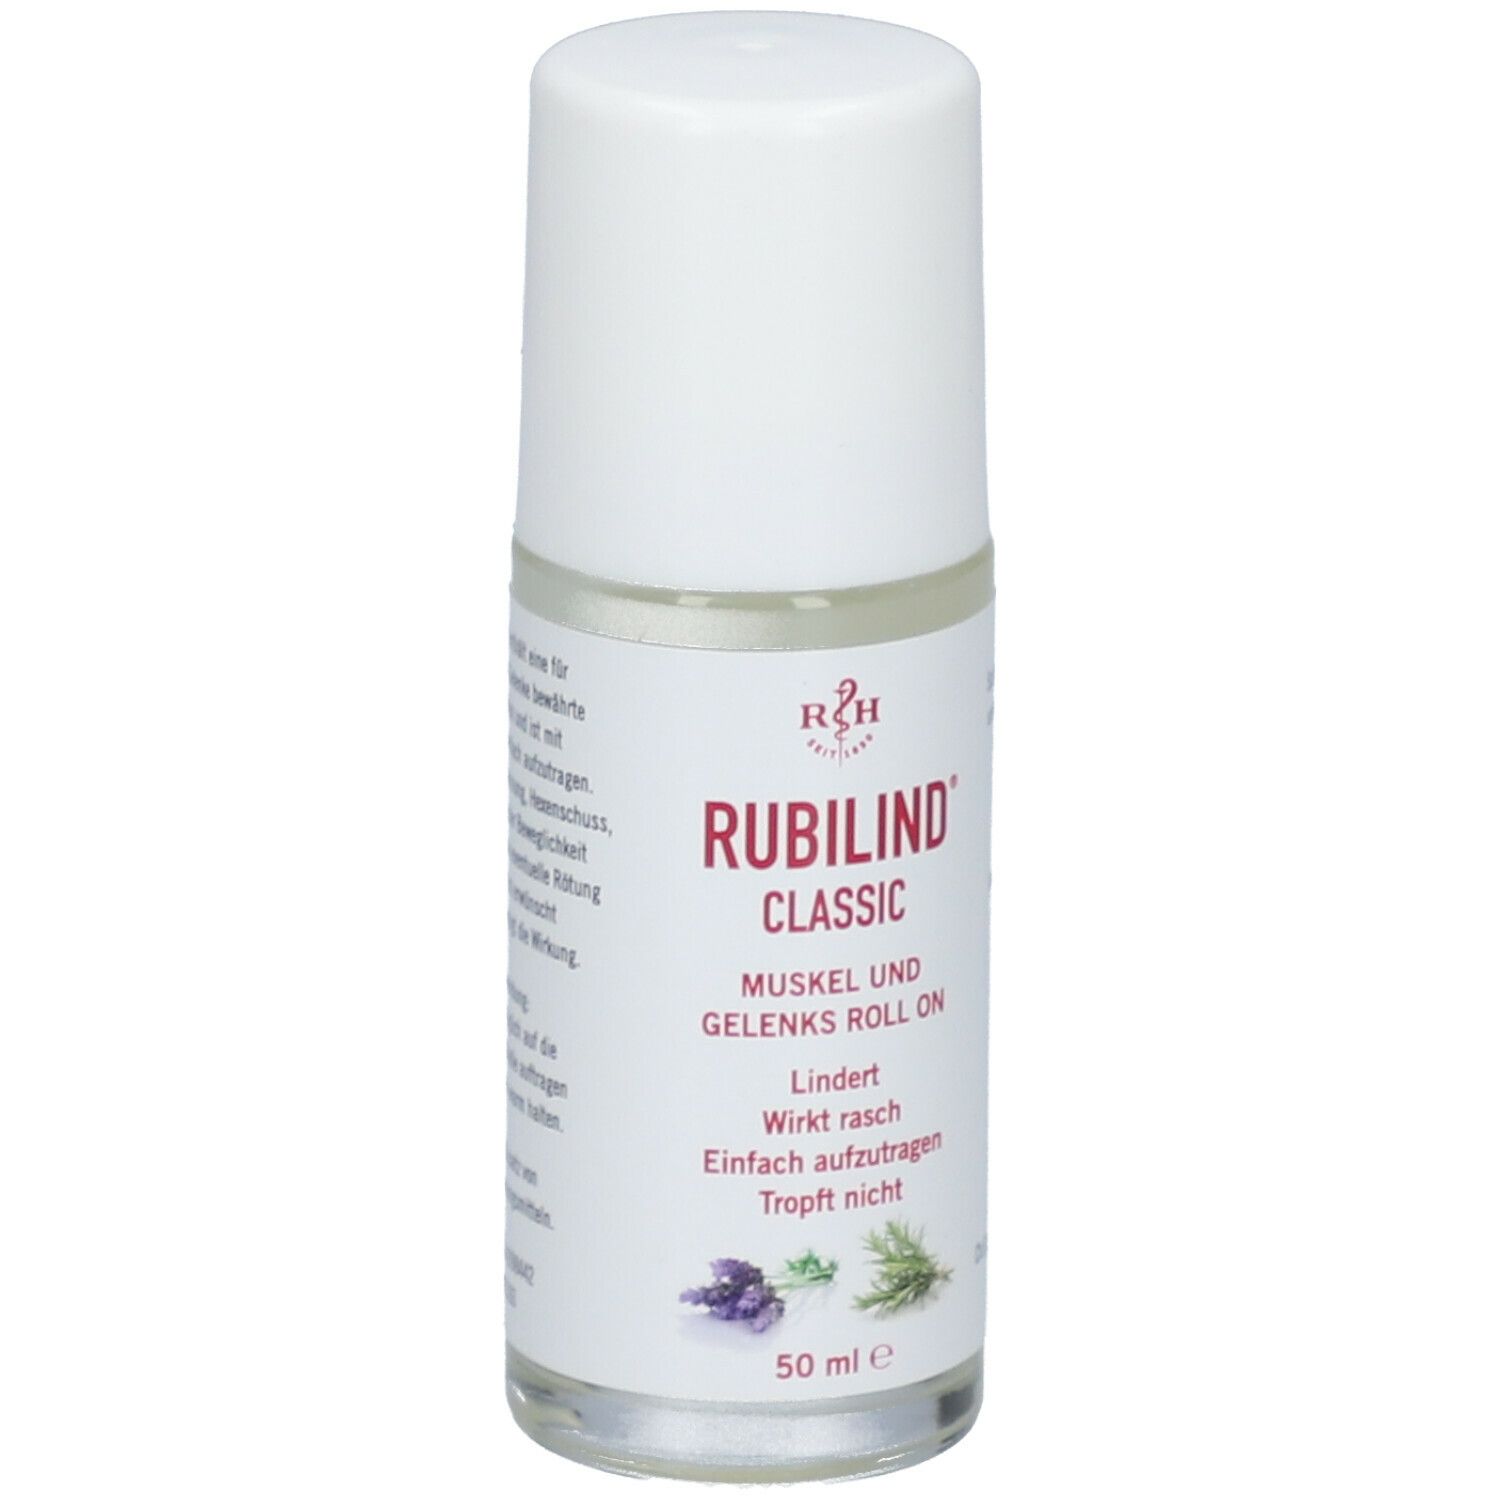 RUBILIND® CLASSIC